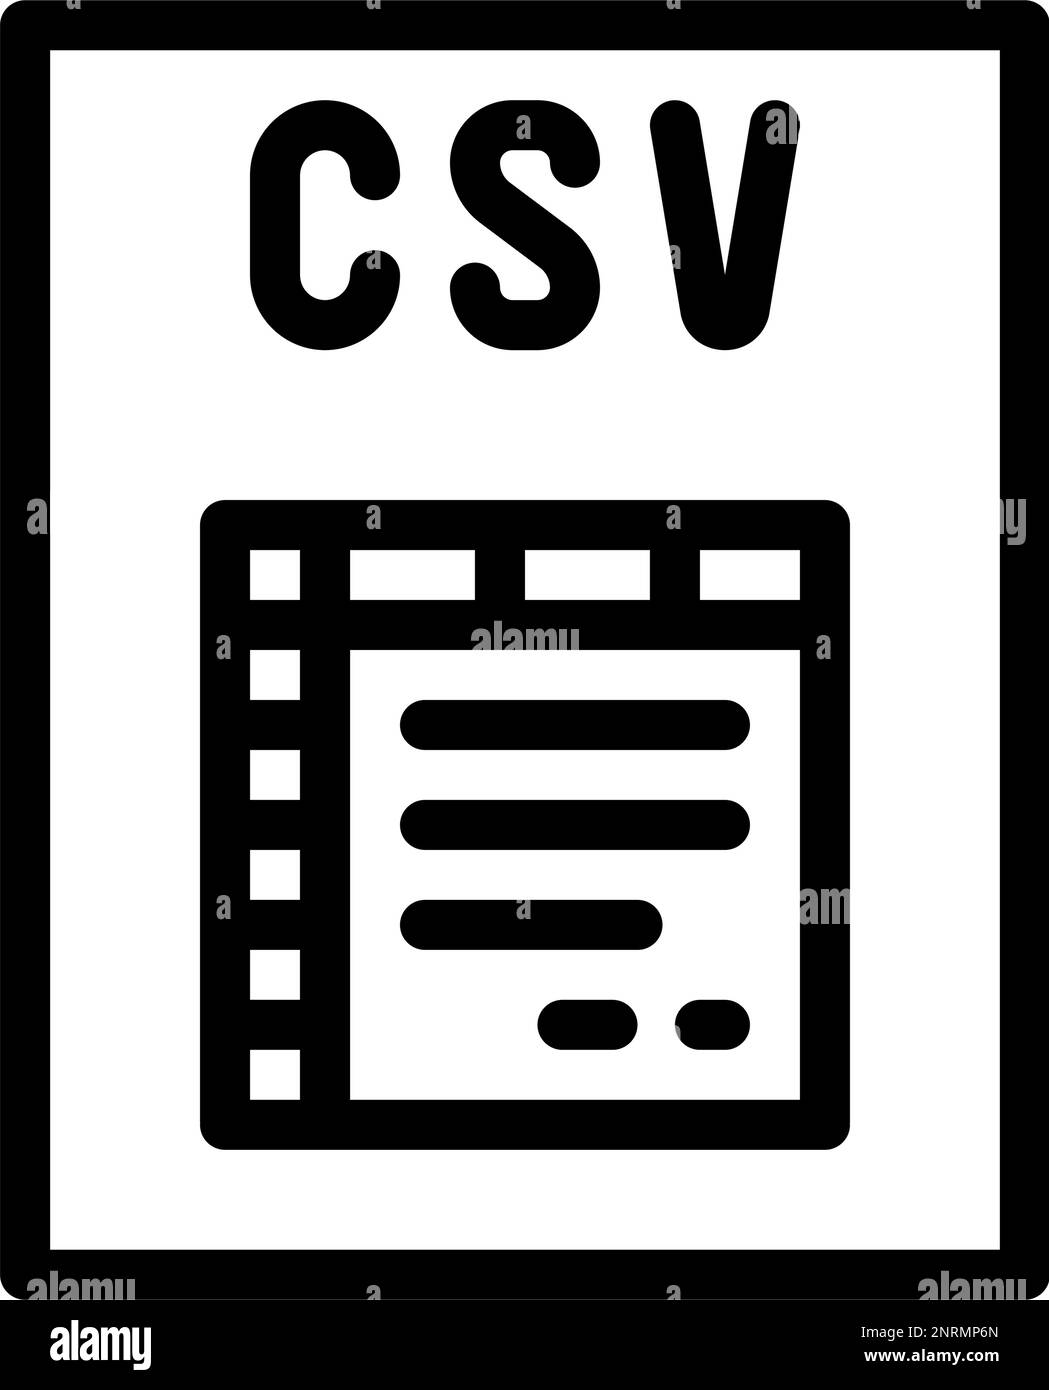 Formato De Archivo Csv Icono De L Nea De Documento Ilustraci N Vectorial Imagen Vector De Stock